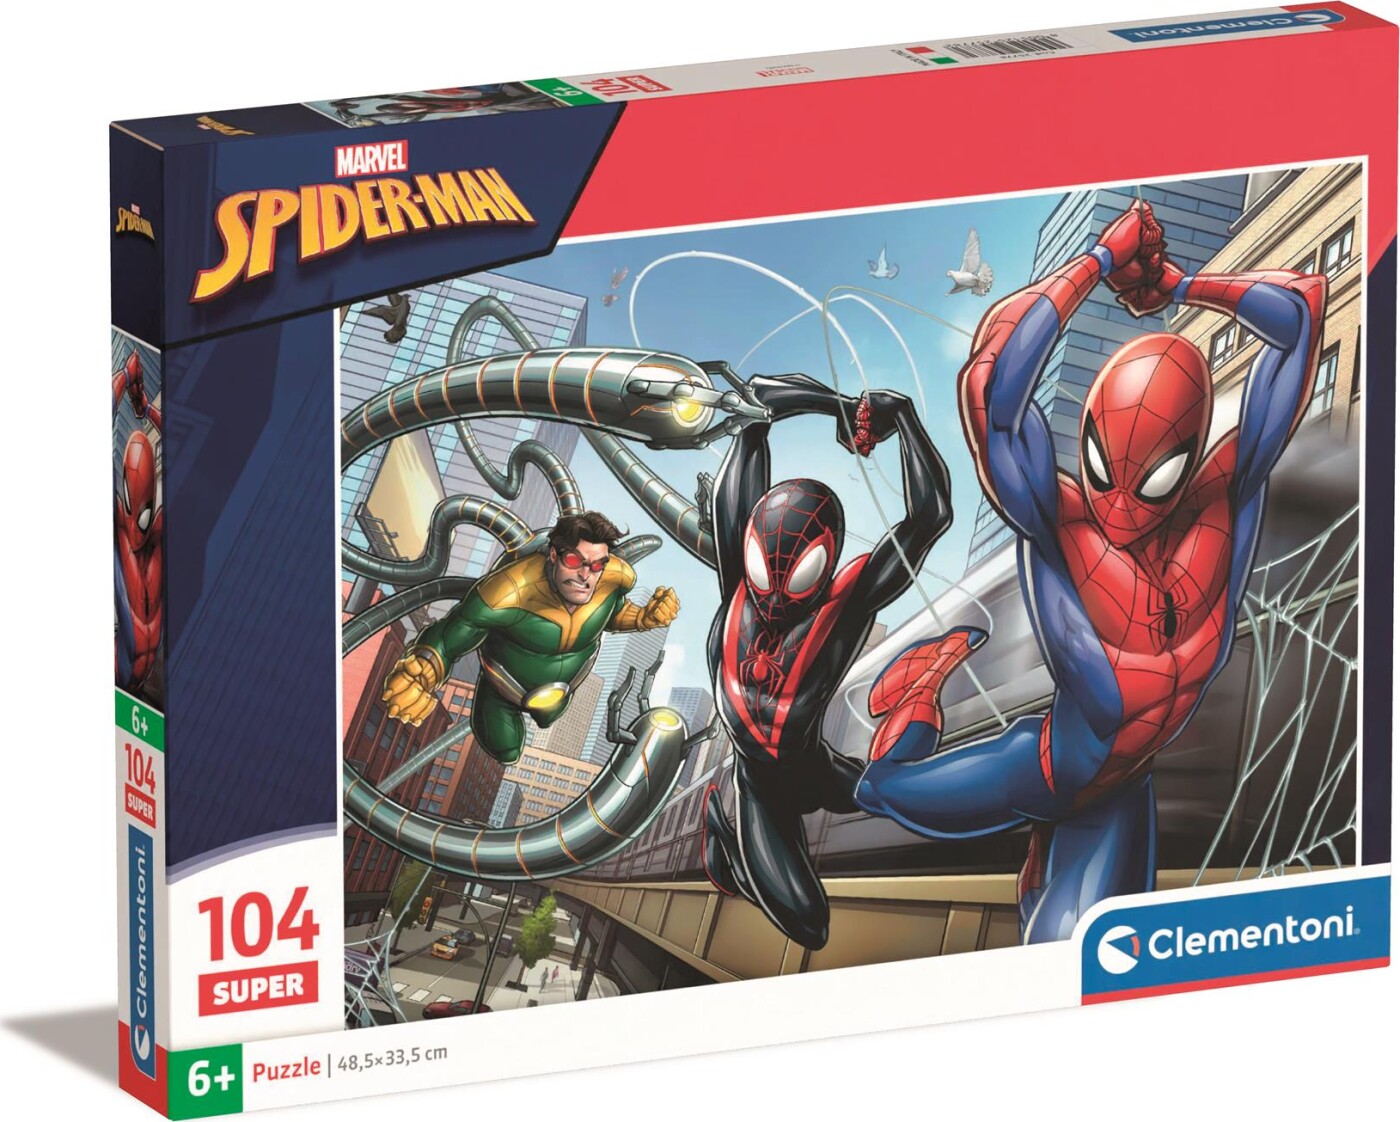 Spiderman Puslespil - Marvel - Super - 104 Brikker - Clementoni